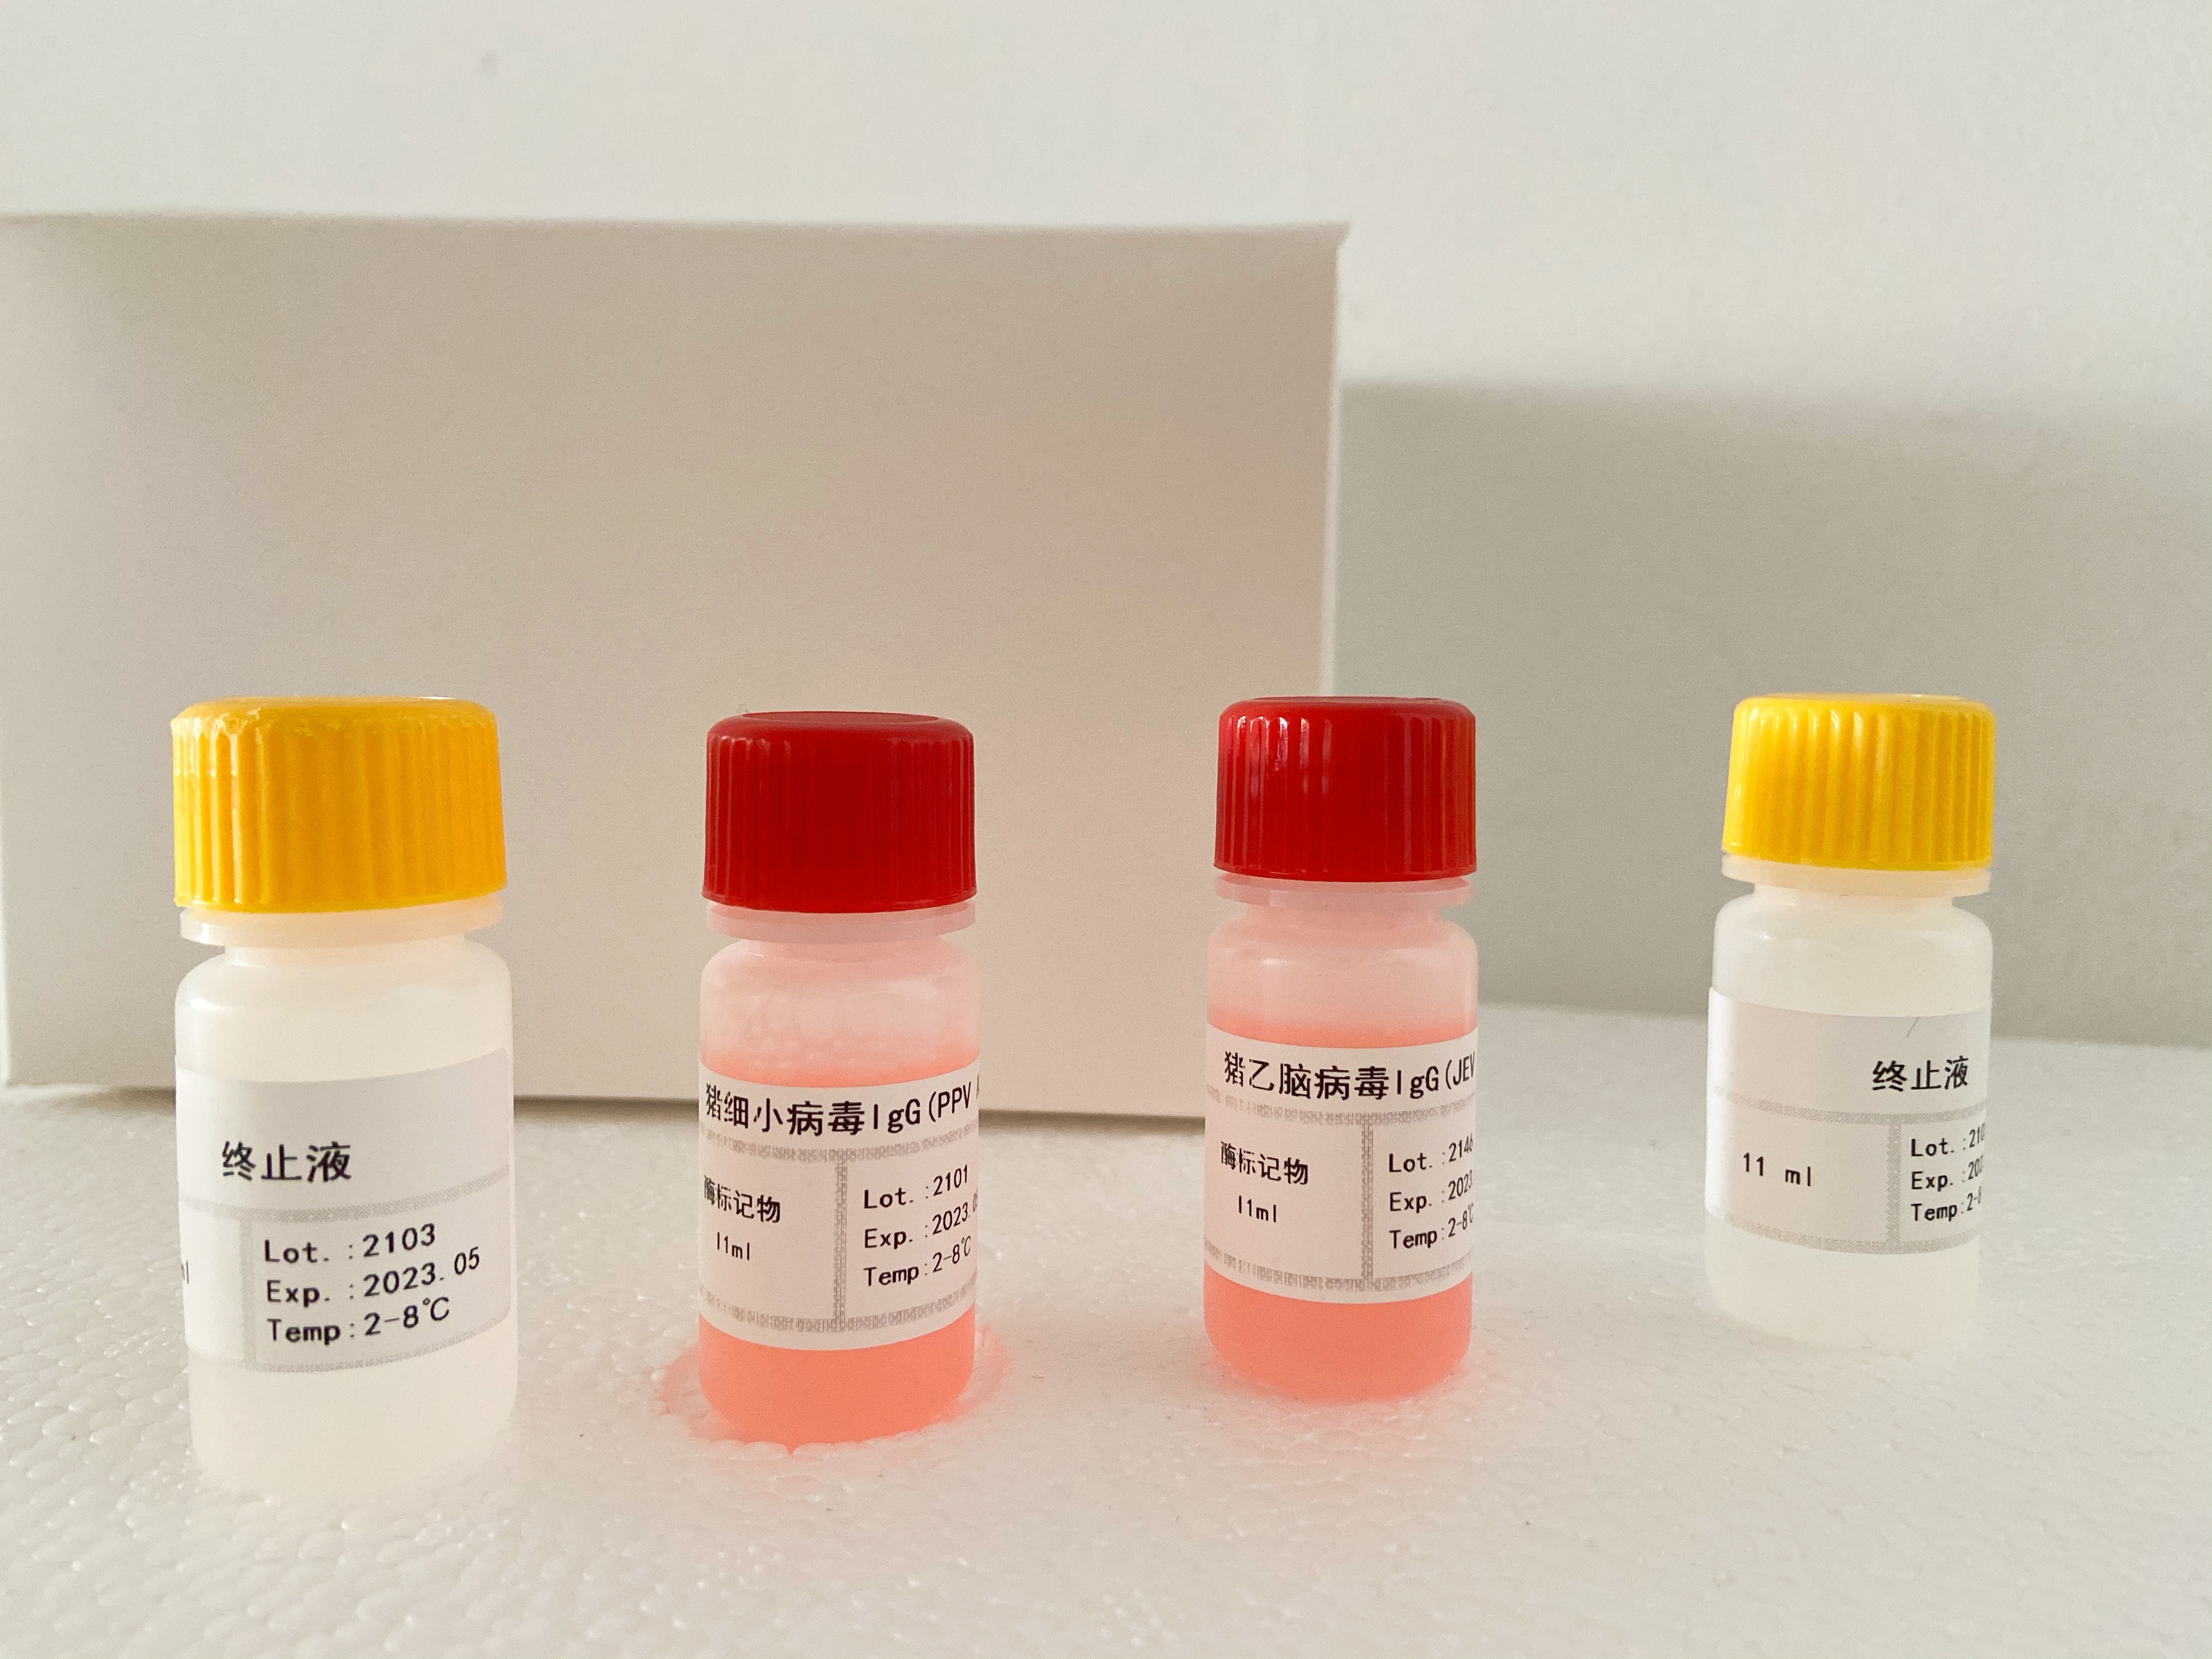 小鼠硫氧化还原蛋白(Trx)检测试剂盒